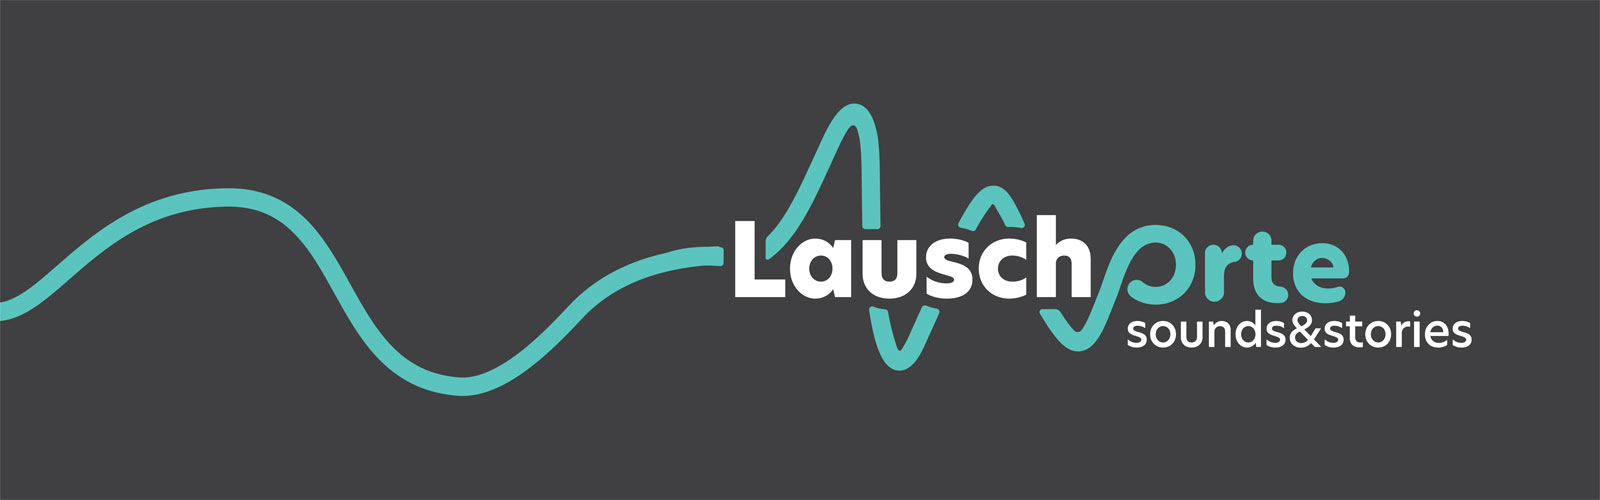 Logo in Bannerform von "LauschOrte"